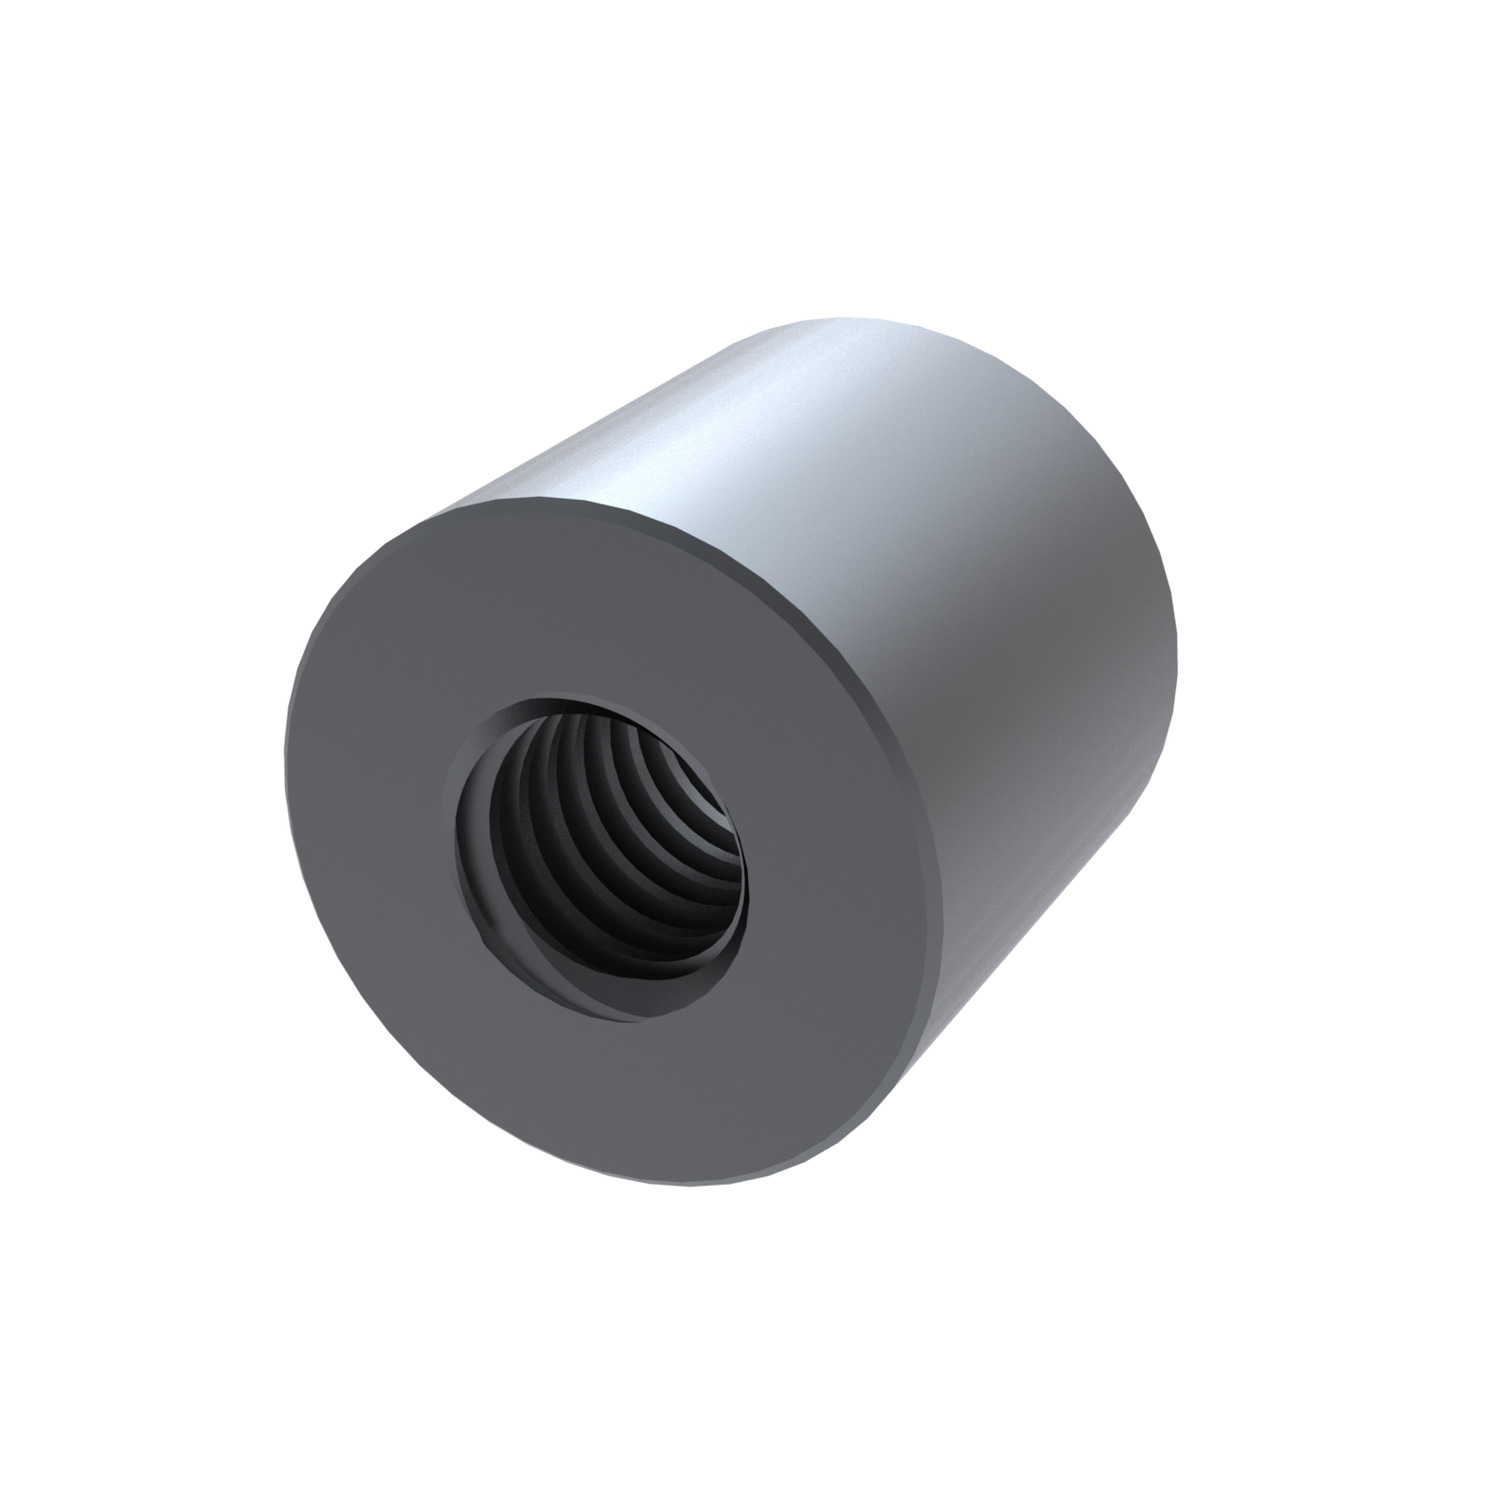 L1339.R14-06 Cylindrical steel nut right hand Ø14x06 EC:20149420 WG:05063055193054